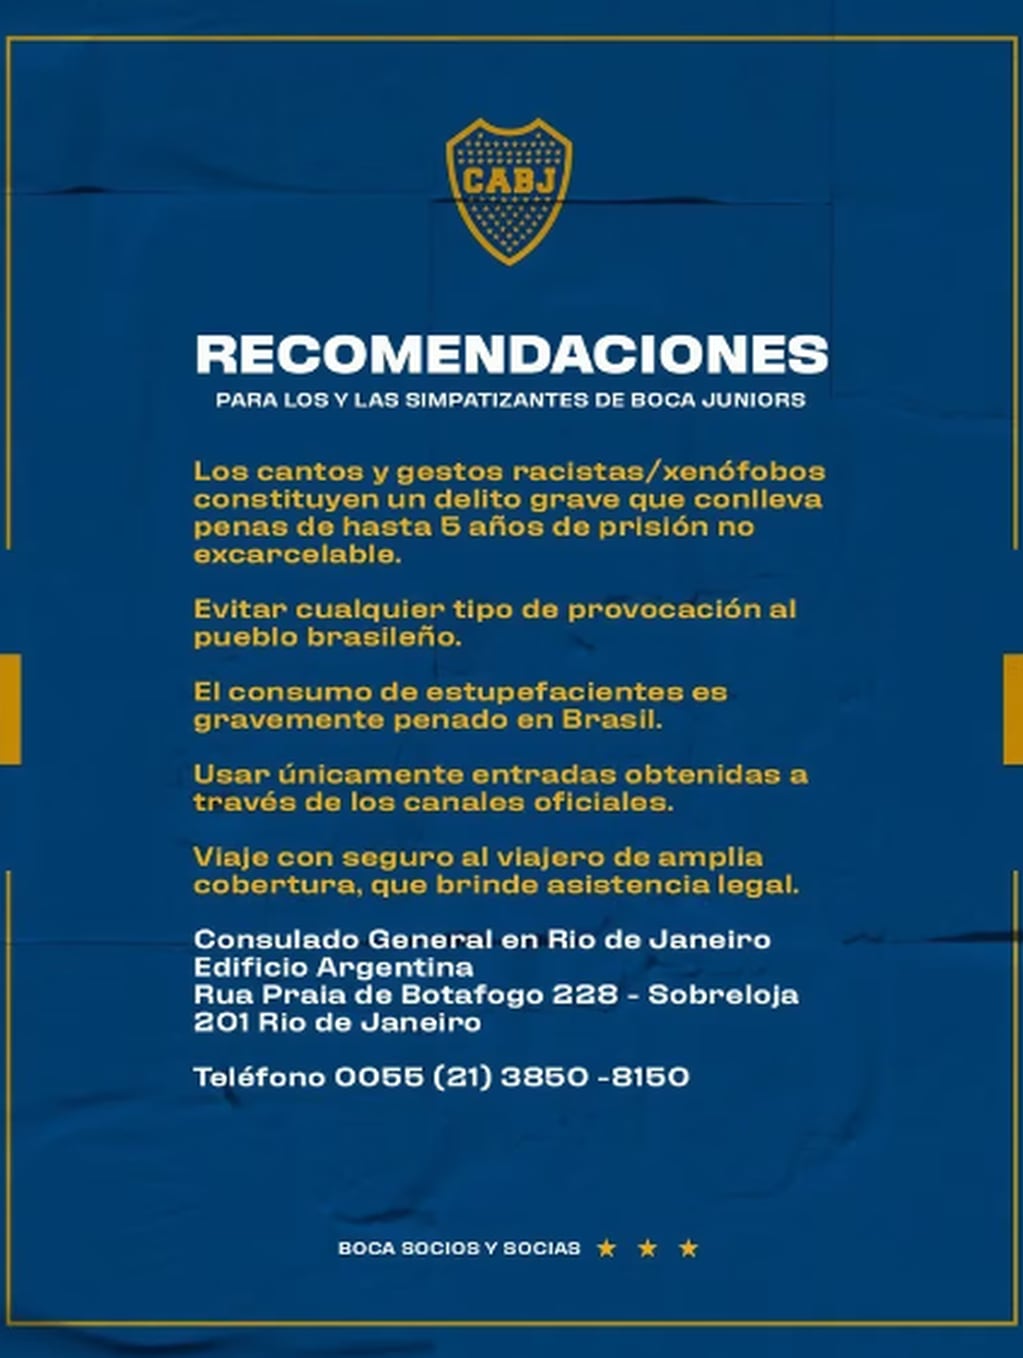 Las recomendaciones de Boca para sus hinchas en Río de Janeiro.